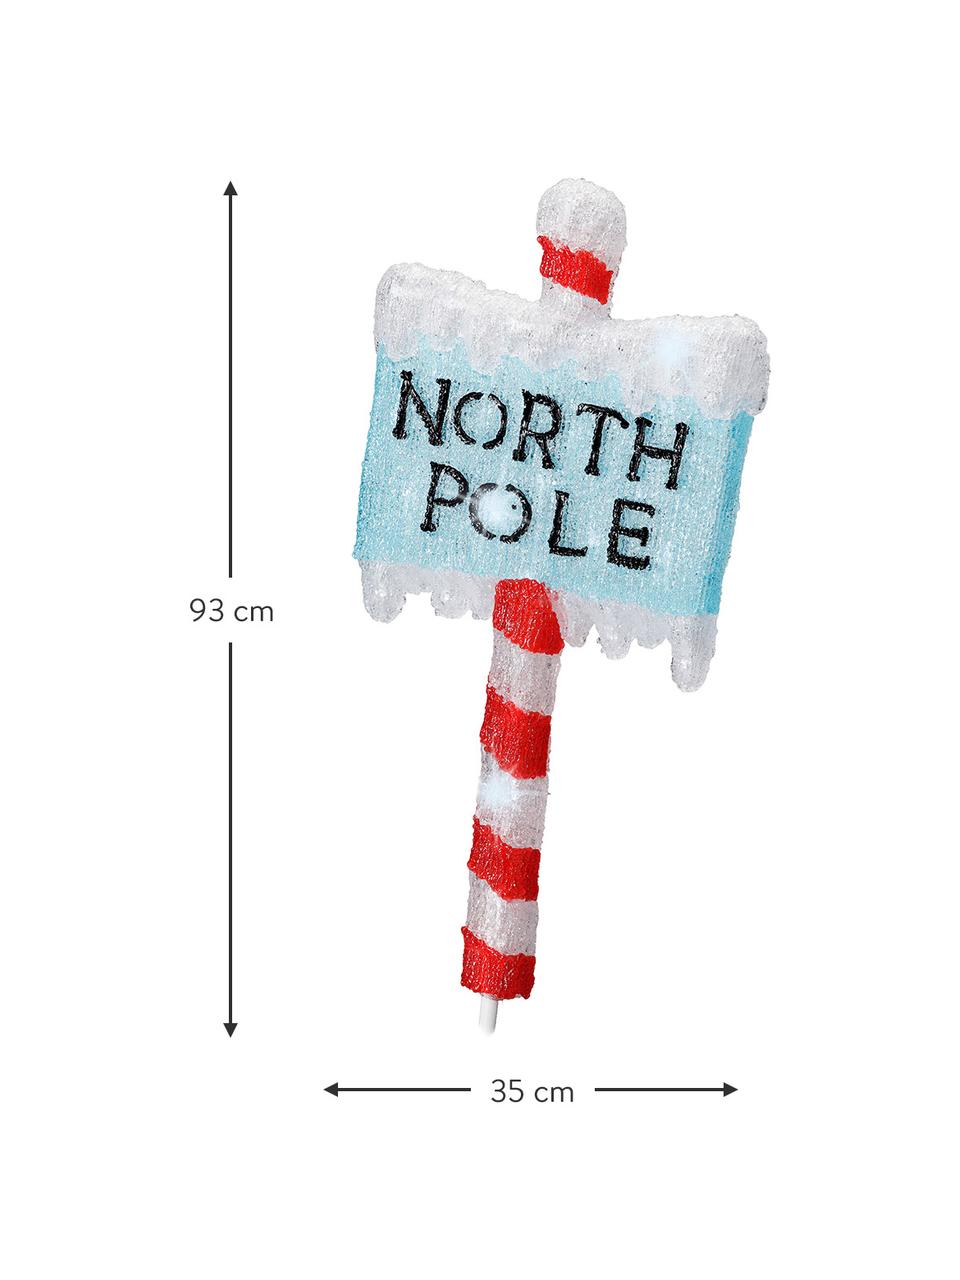 Svetelná LED dekorácia North Pole V 93 cm, Umelá hmota, Červená, modrá, biela, Š 35 x V 93 cm